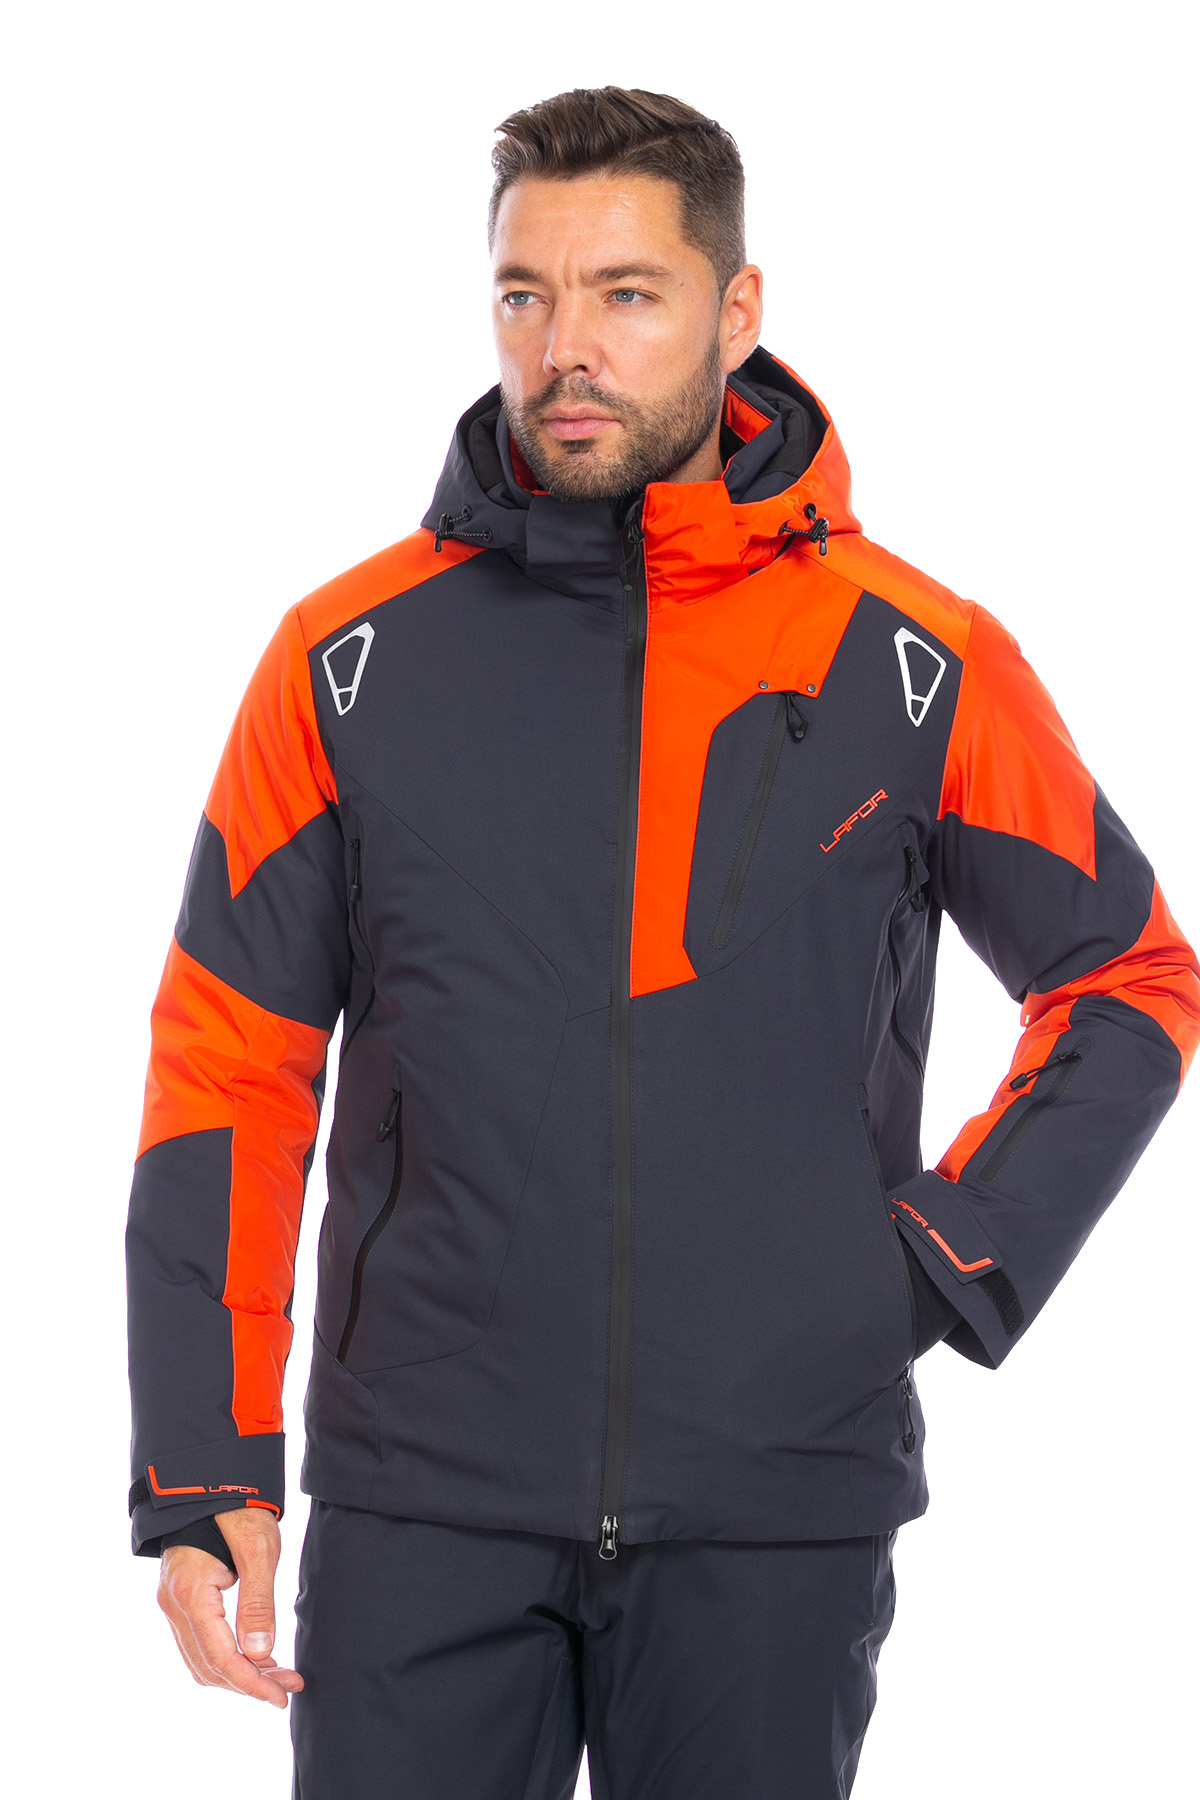 Мужская горнолыжная Куртка Lafor Темно-серый, 767053 (48, m)